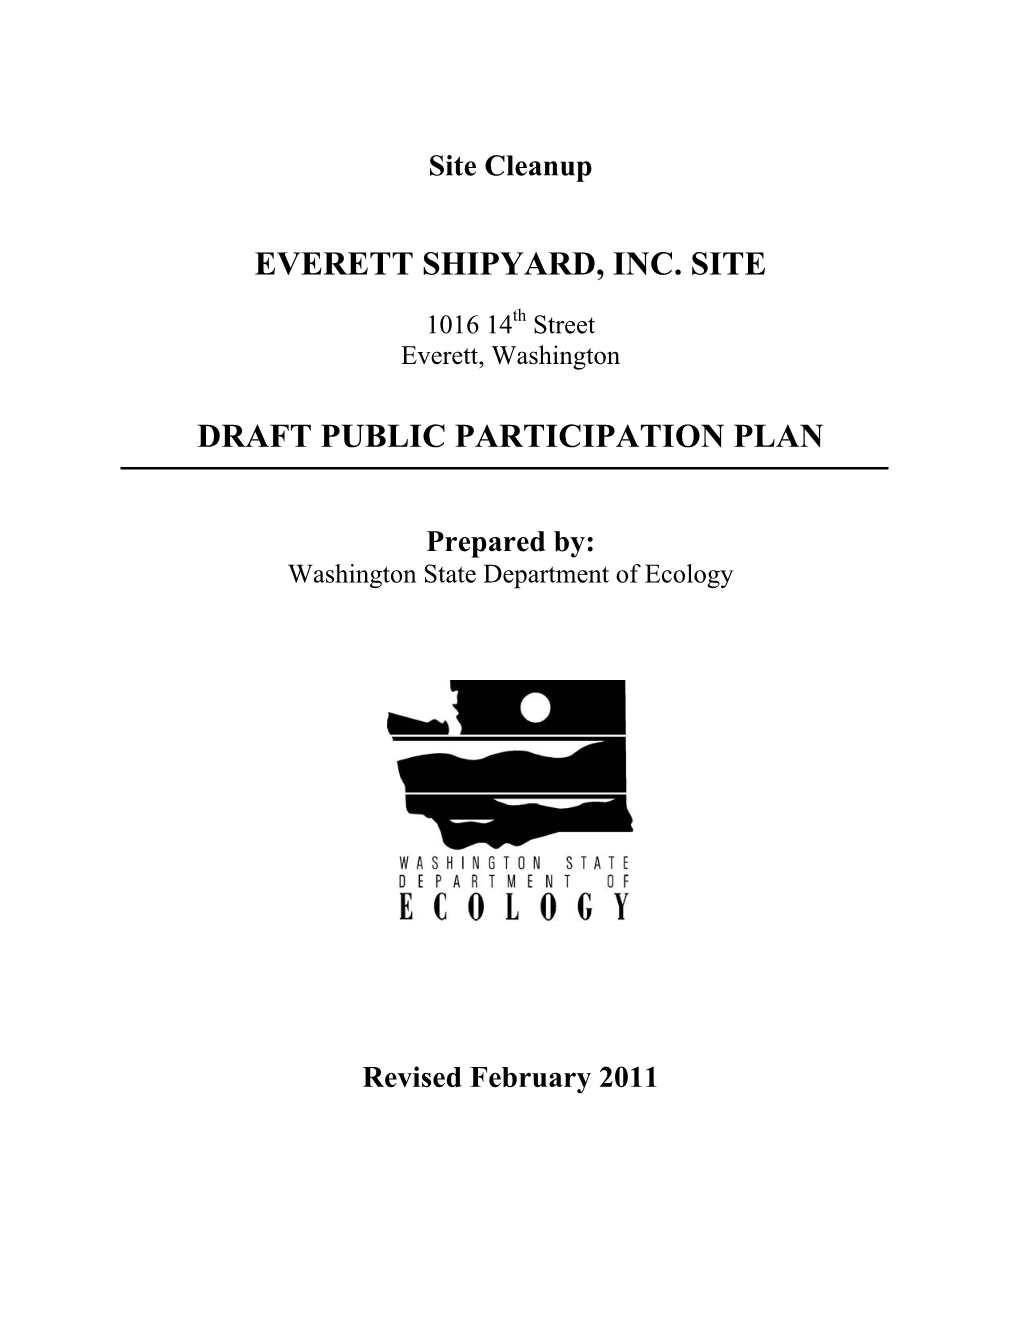 Everett Shipyard, Inc. Site Draft Public Participation